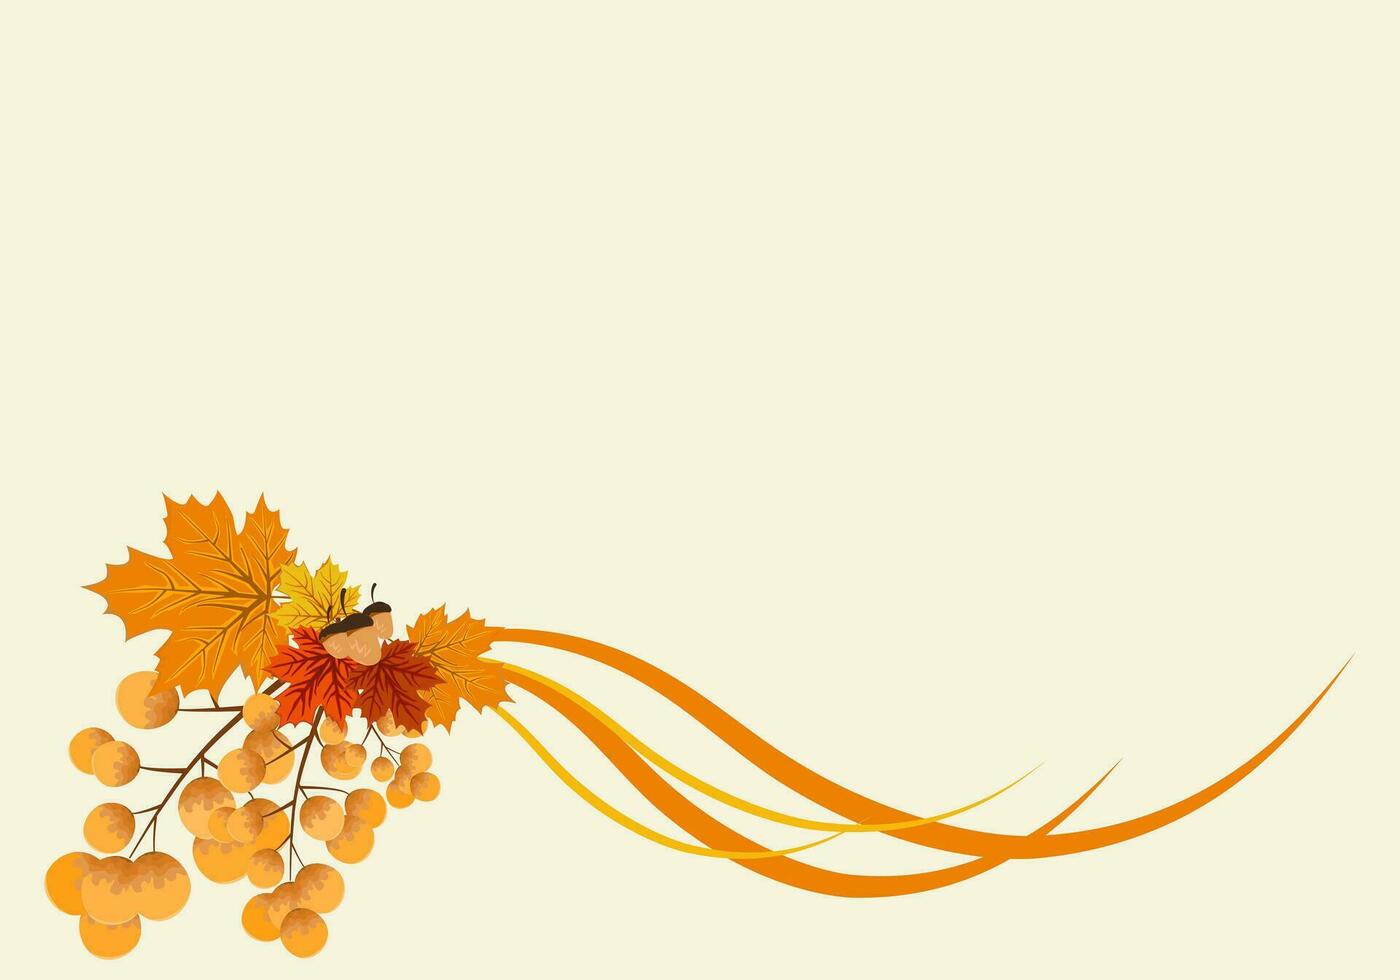 fondo de otoño con hojas de color amarillo dorado. concepto de caída, para papel tapiz, postales, tarjetas de felicitación, páginas web, pancartas, ventas en línea. ilustración vectorial vector